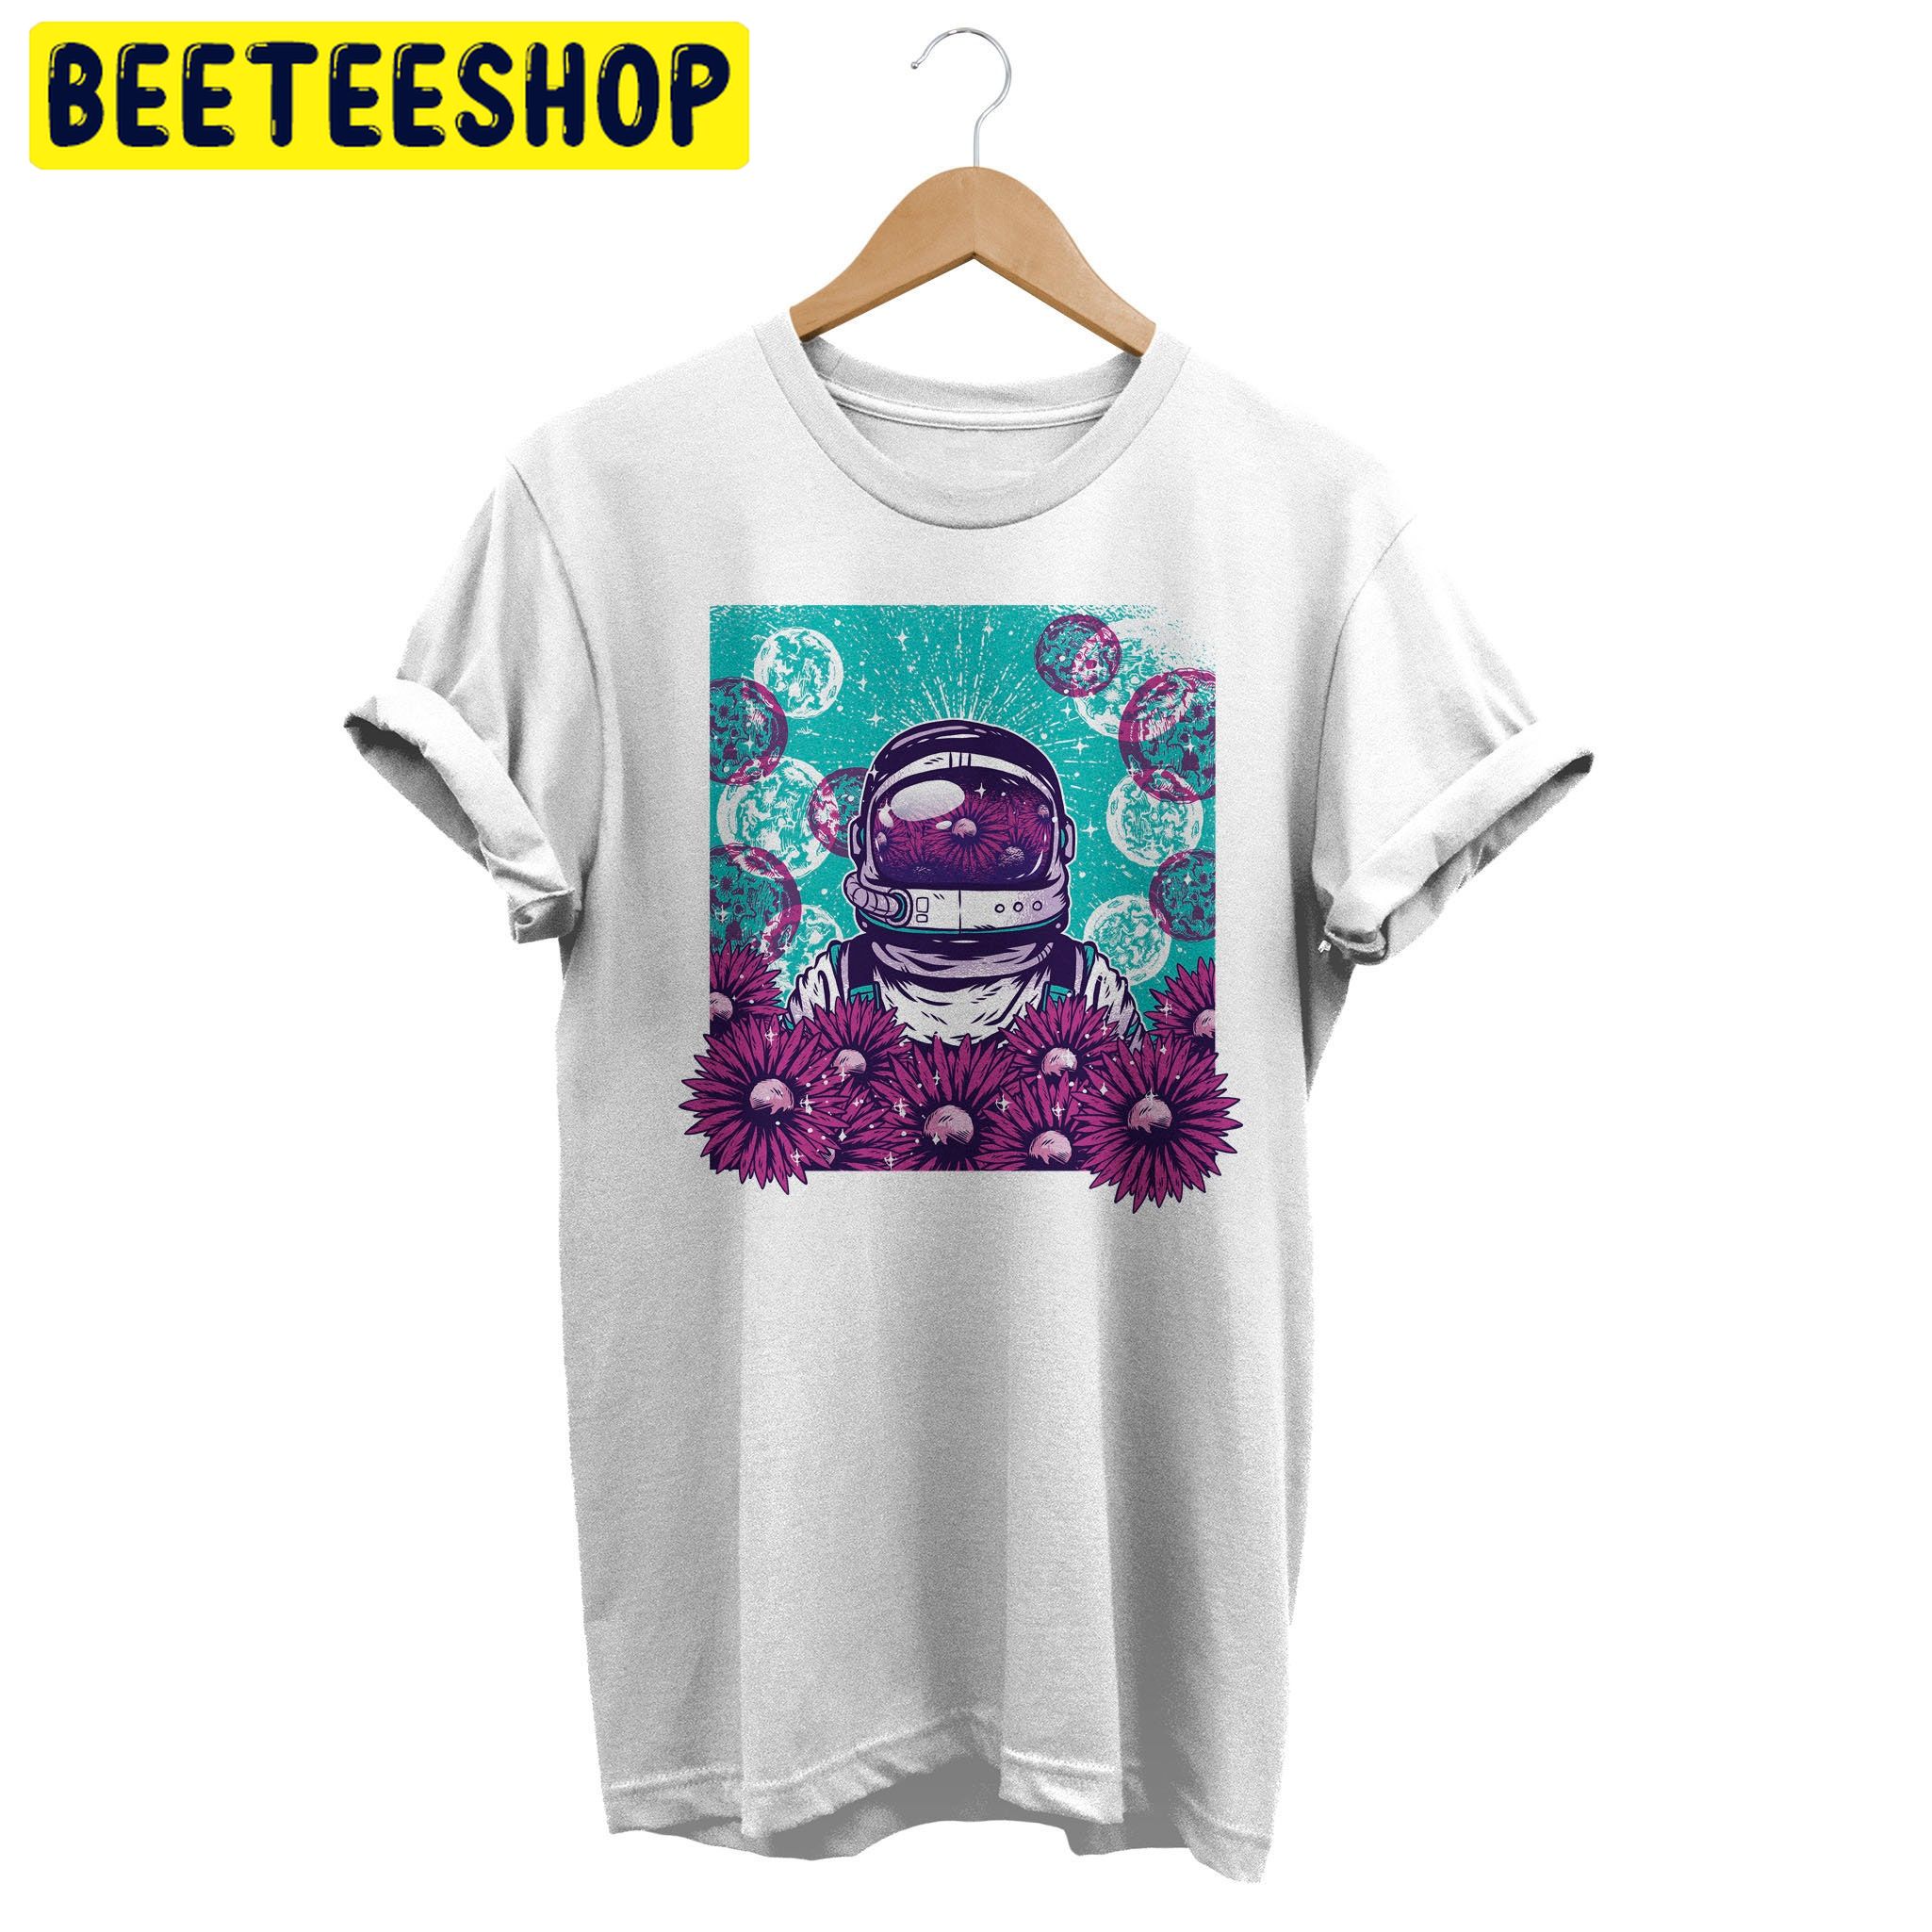 Vaporwave Astronaut Retro Floral Trending Unisex Shirt